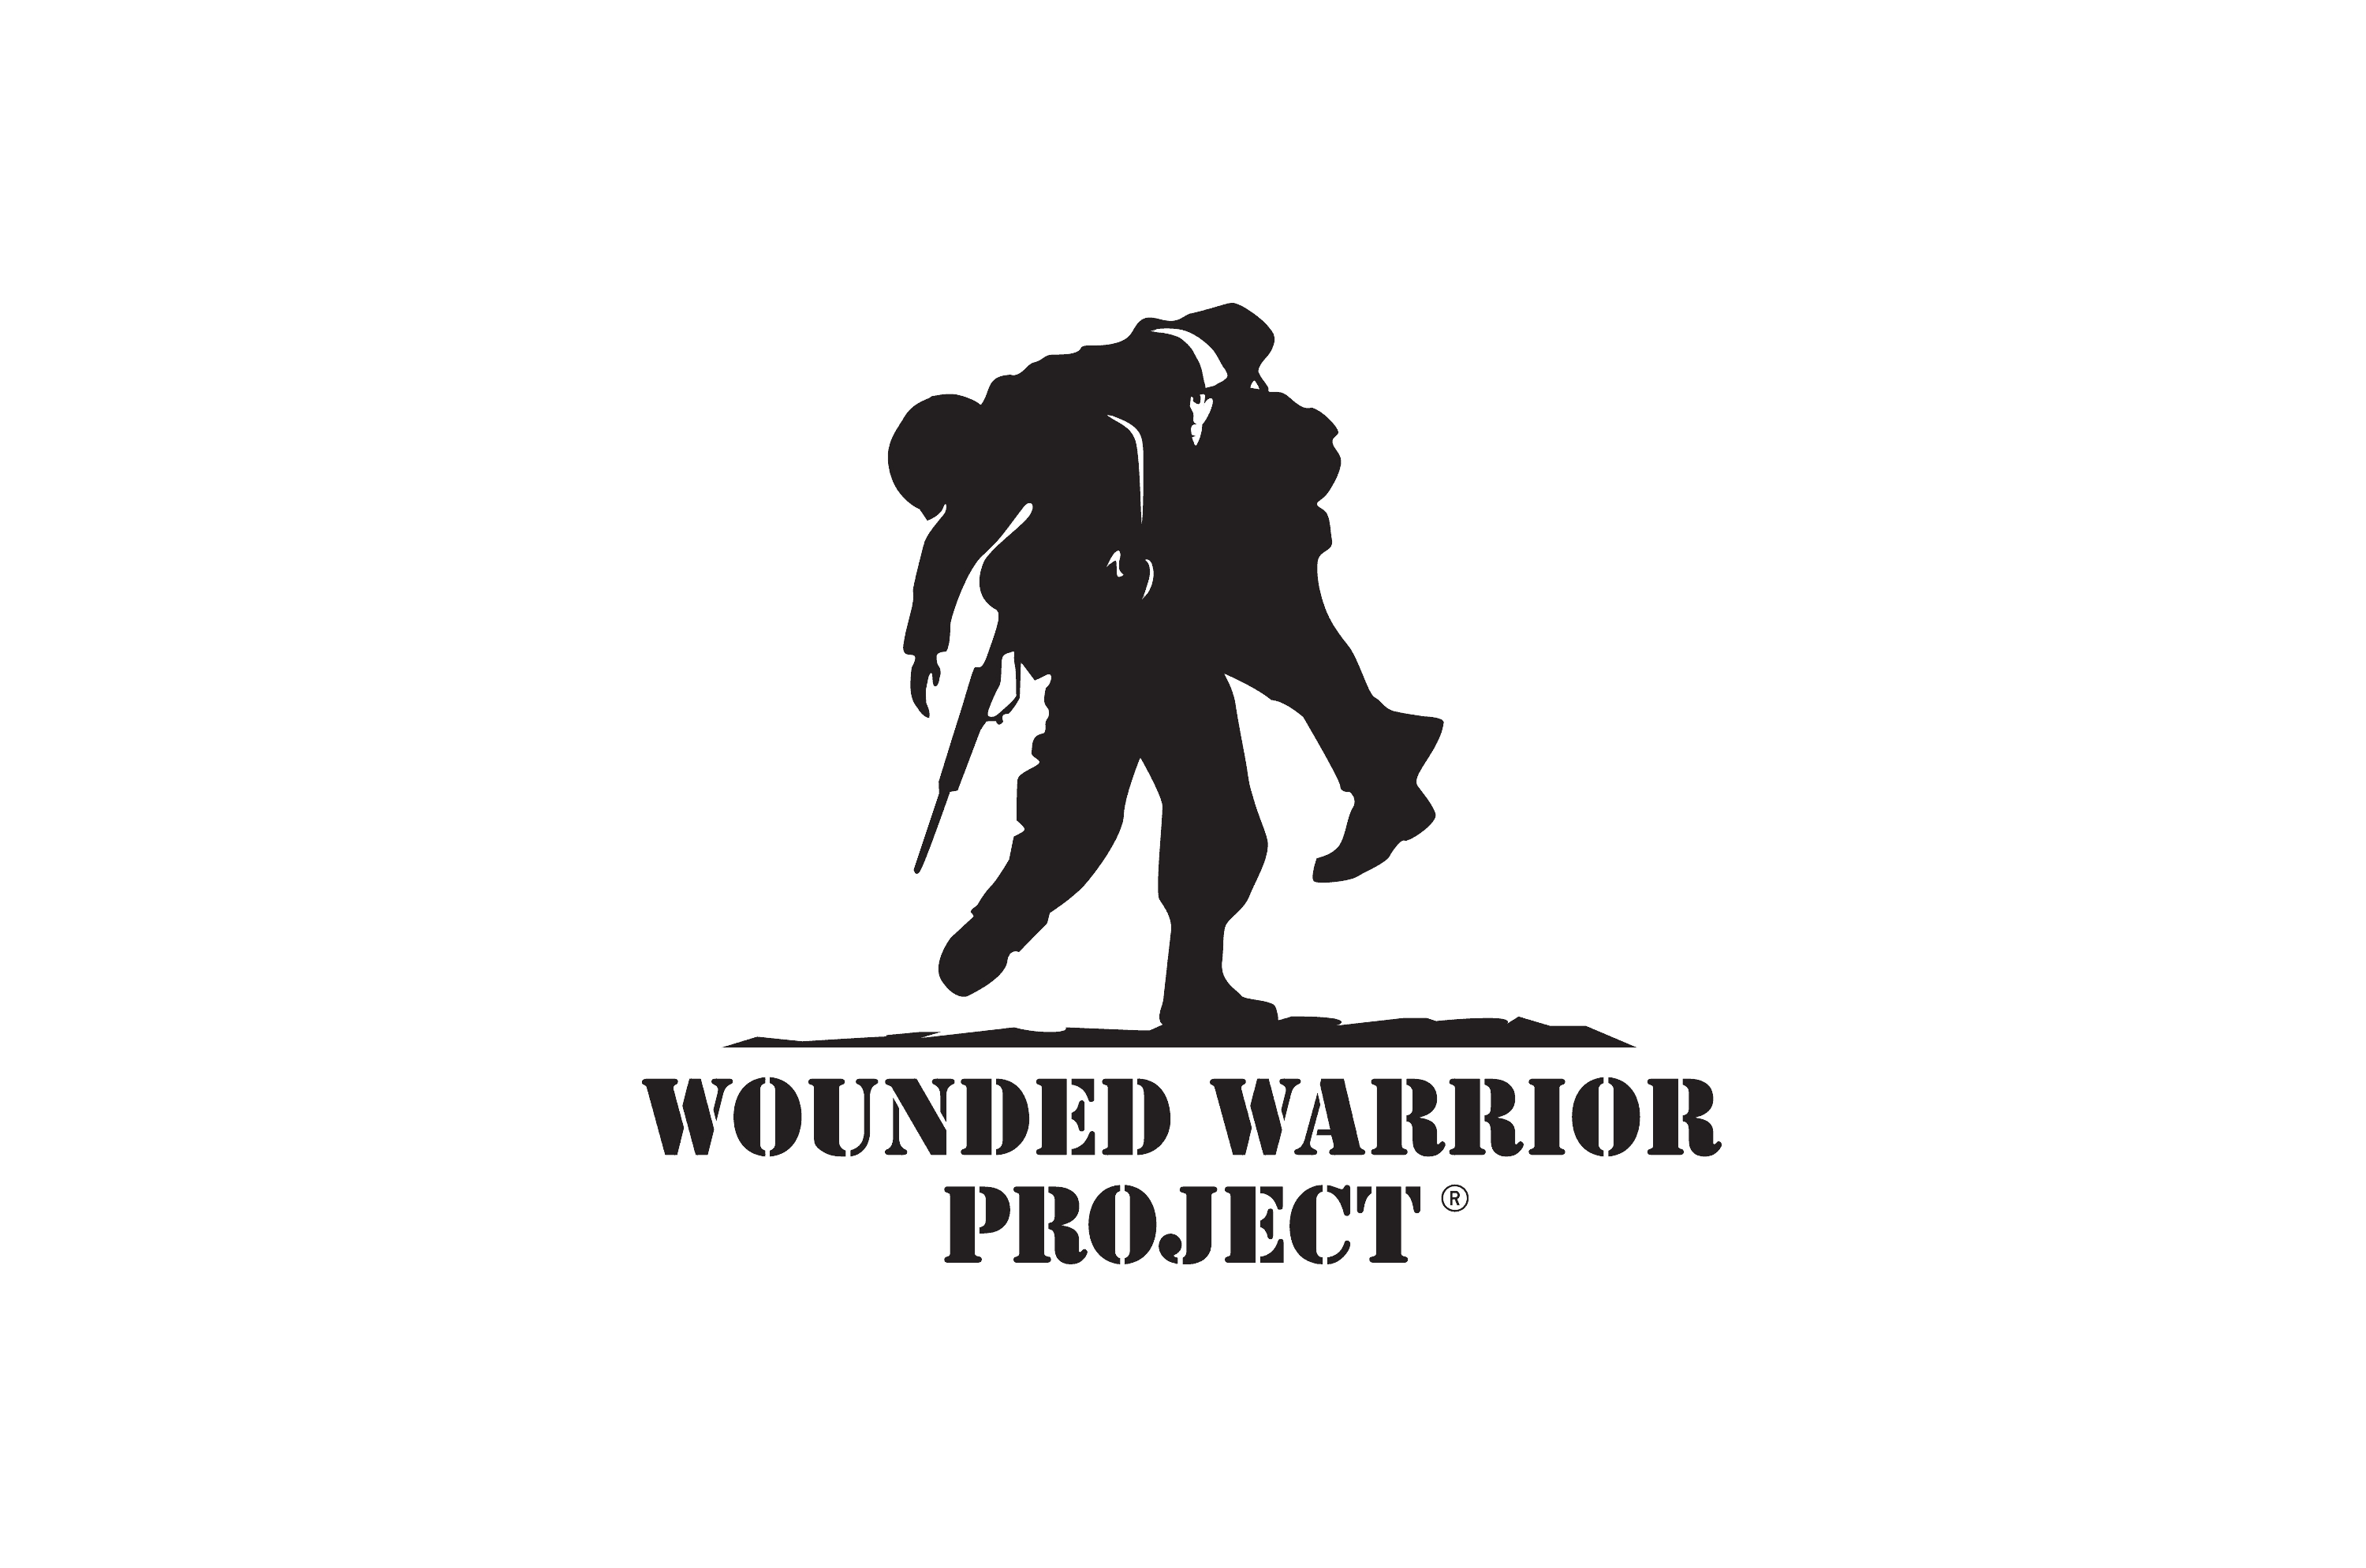 woundedwarriorproject.png?v=62.7.0